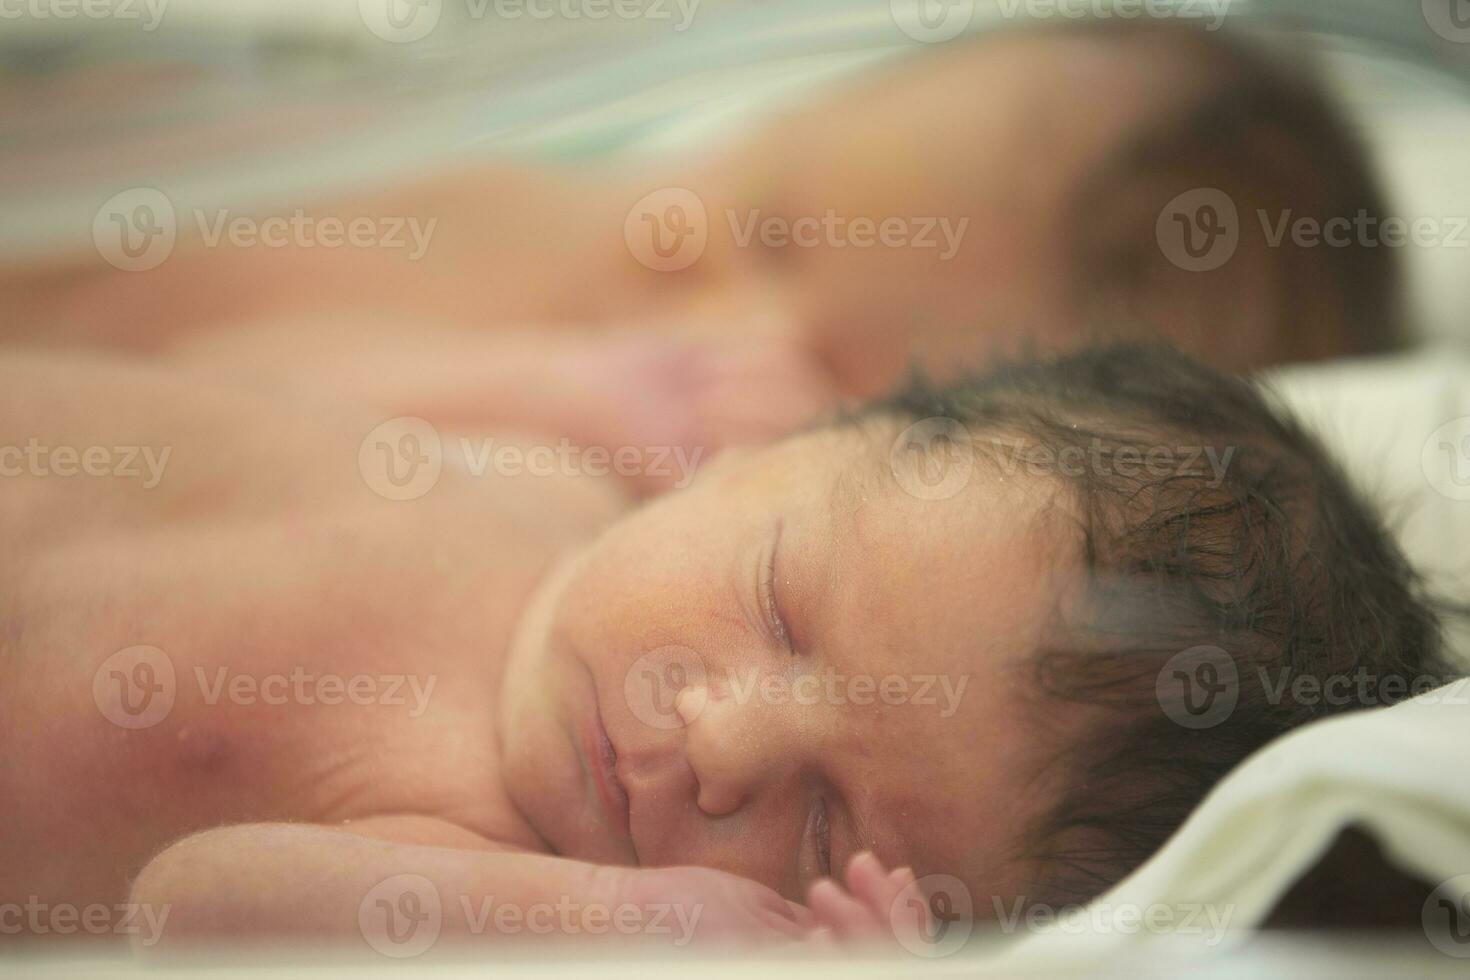 de ansikte av en nyfödd bebis Bakom de glas av en medicinsk låda. foto